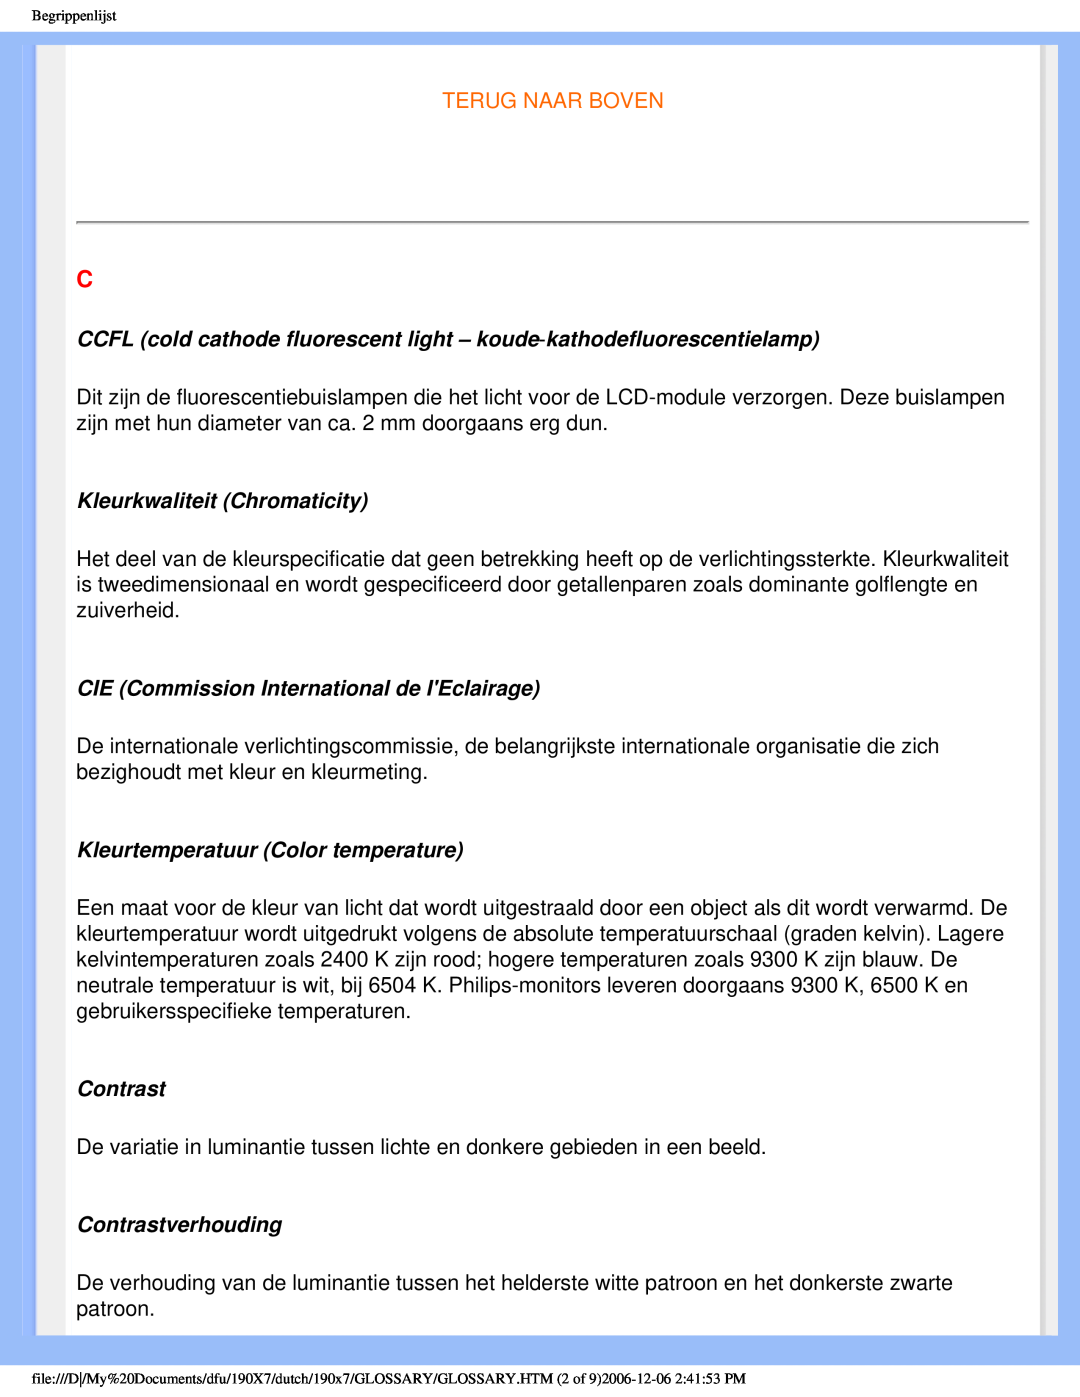 Philips 190X7 Terug Naar Boven, Kleurkwaliteit Chromaticity, CIE Commission International de IEclairage, Contrast 